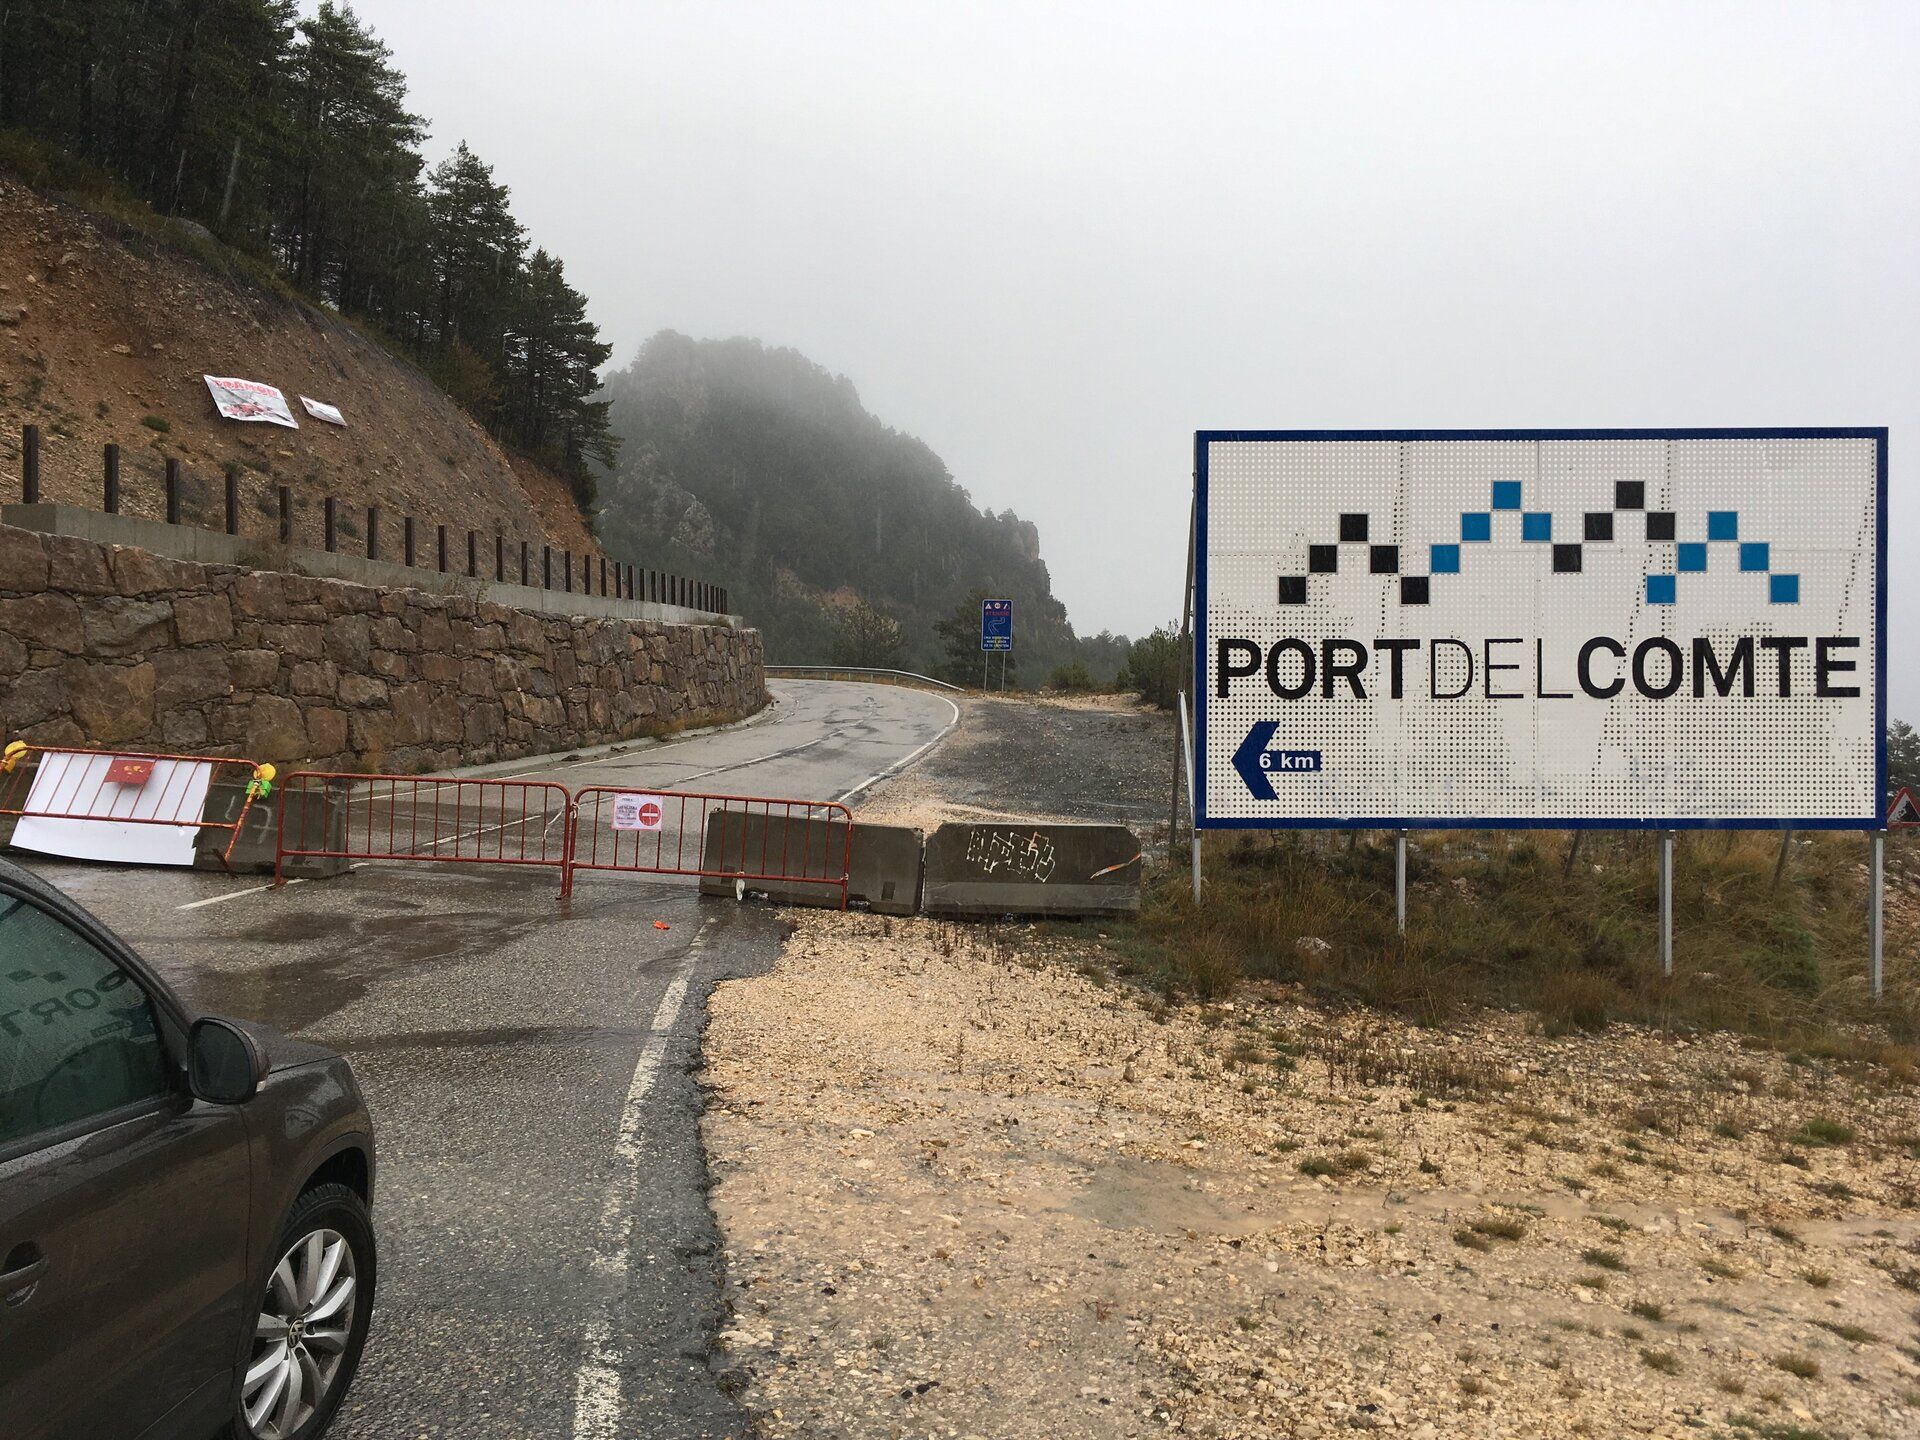 Cartel de entrada a la carretera del Port del Comte